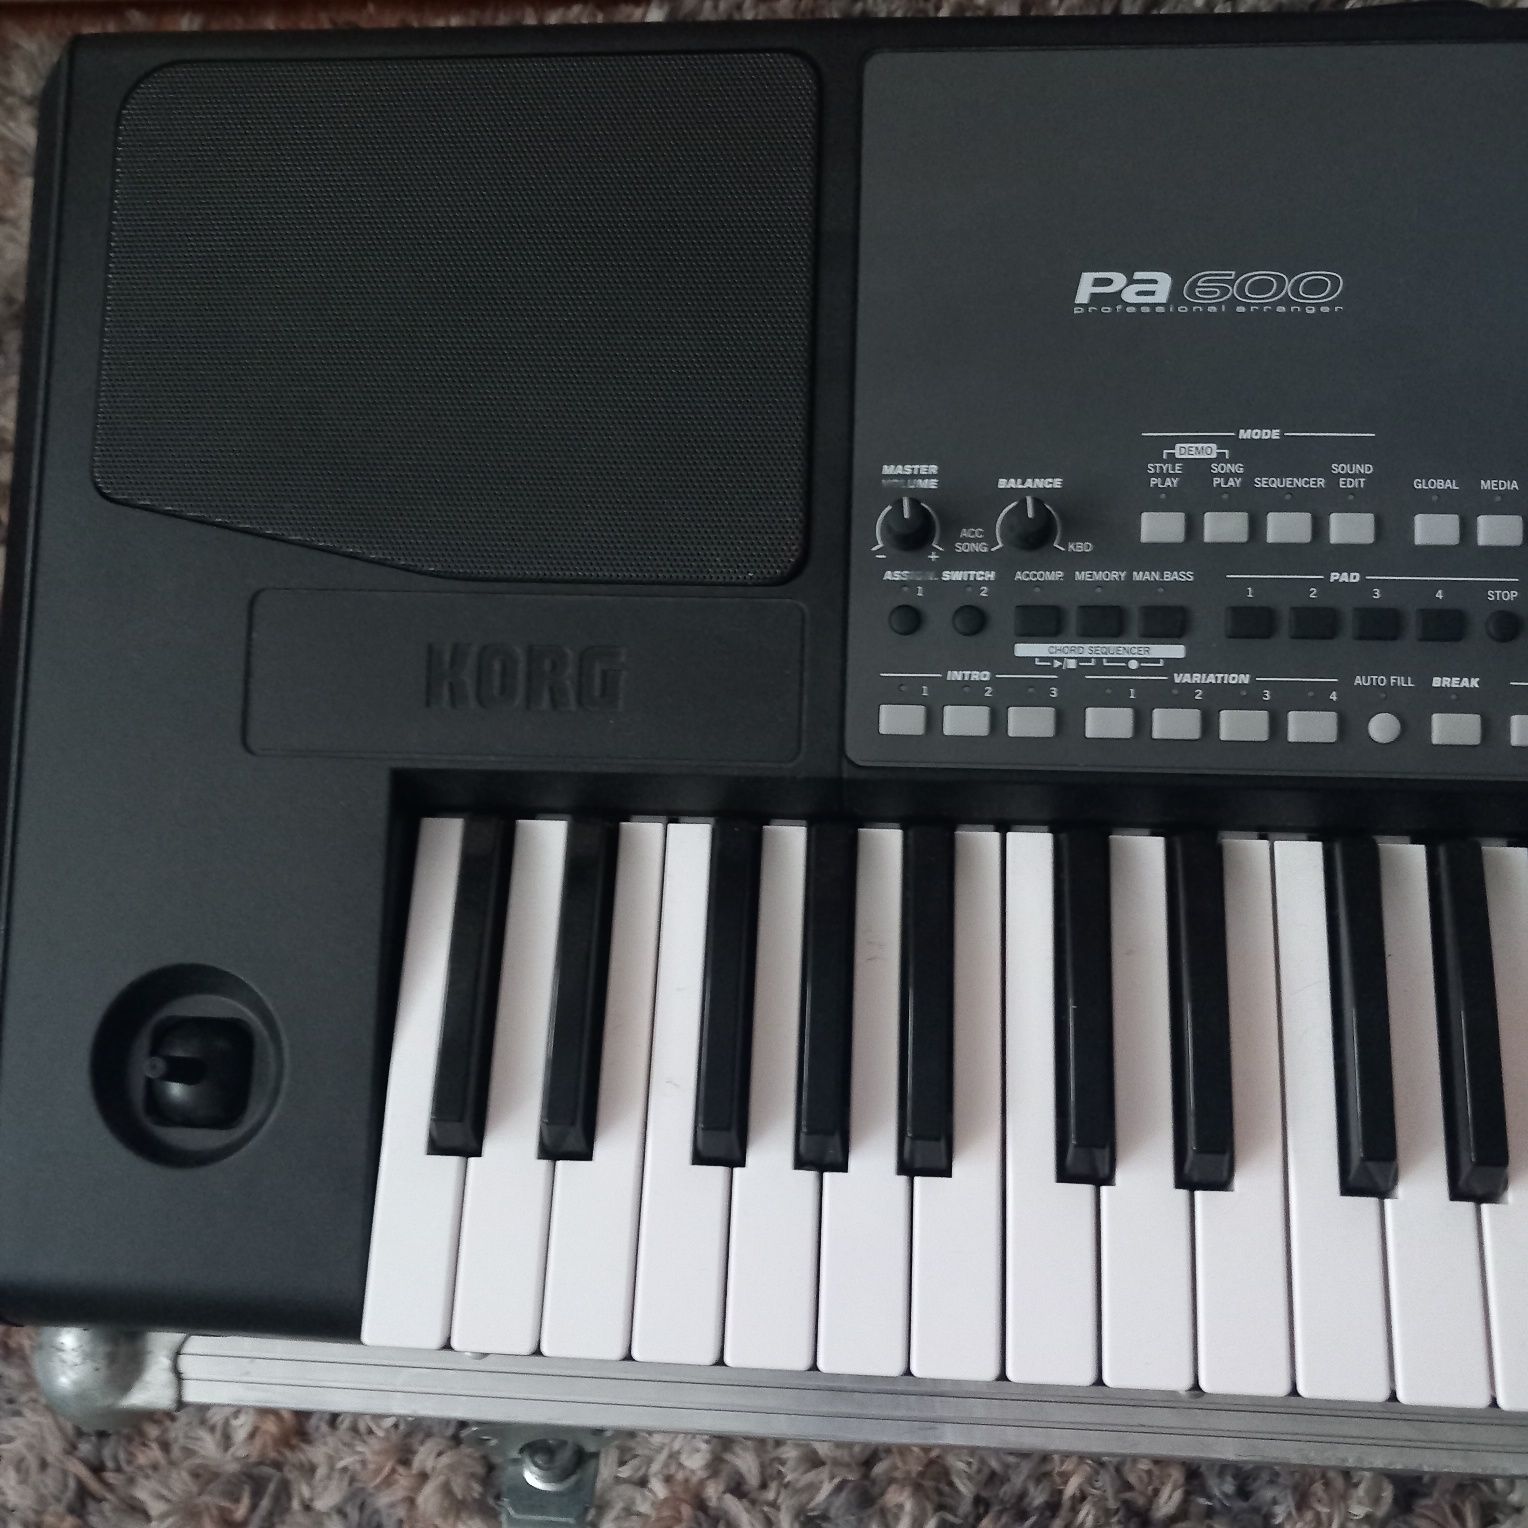 Keyboard Korg Pa 600